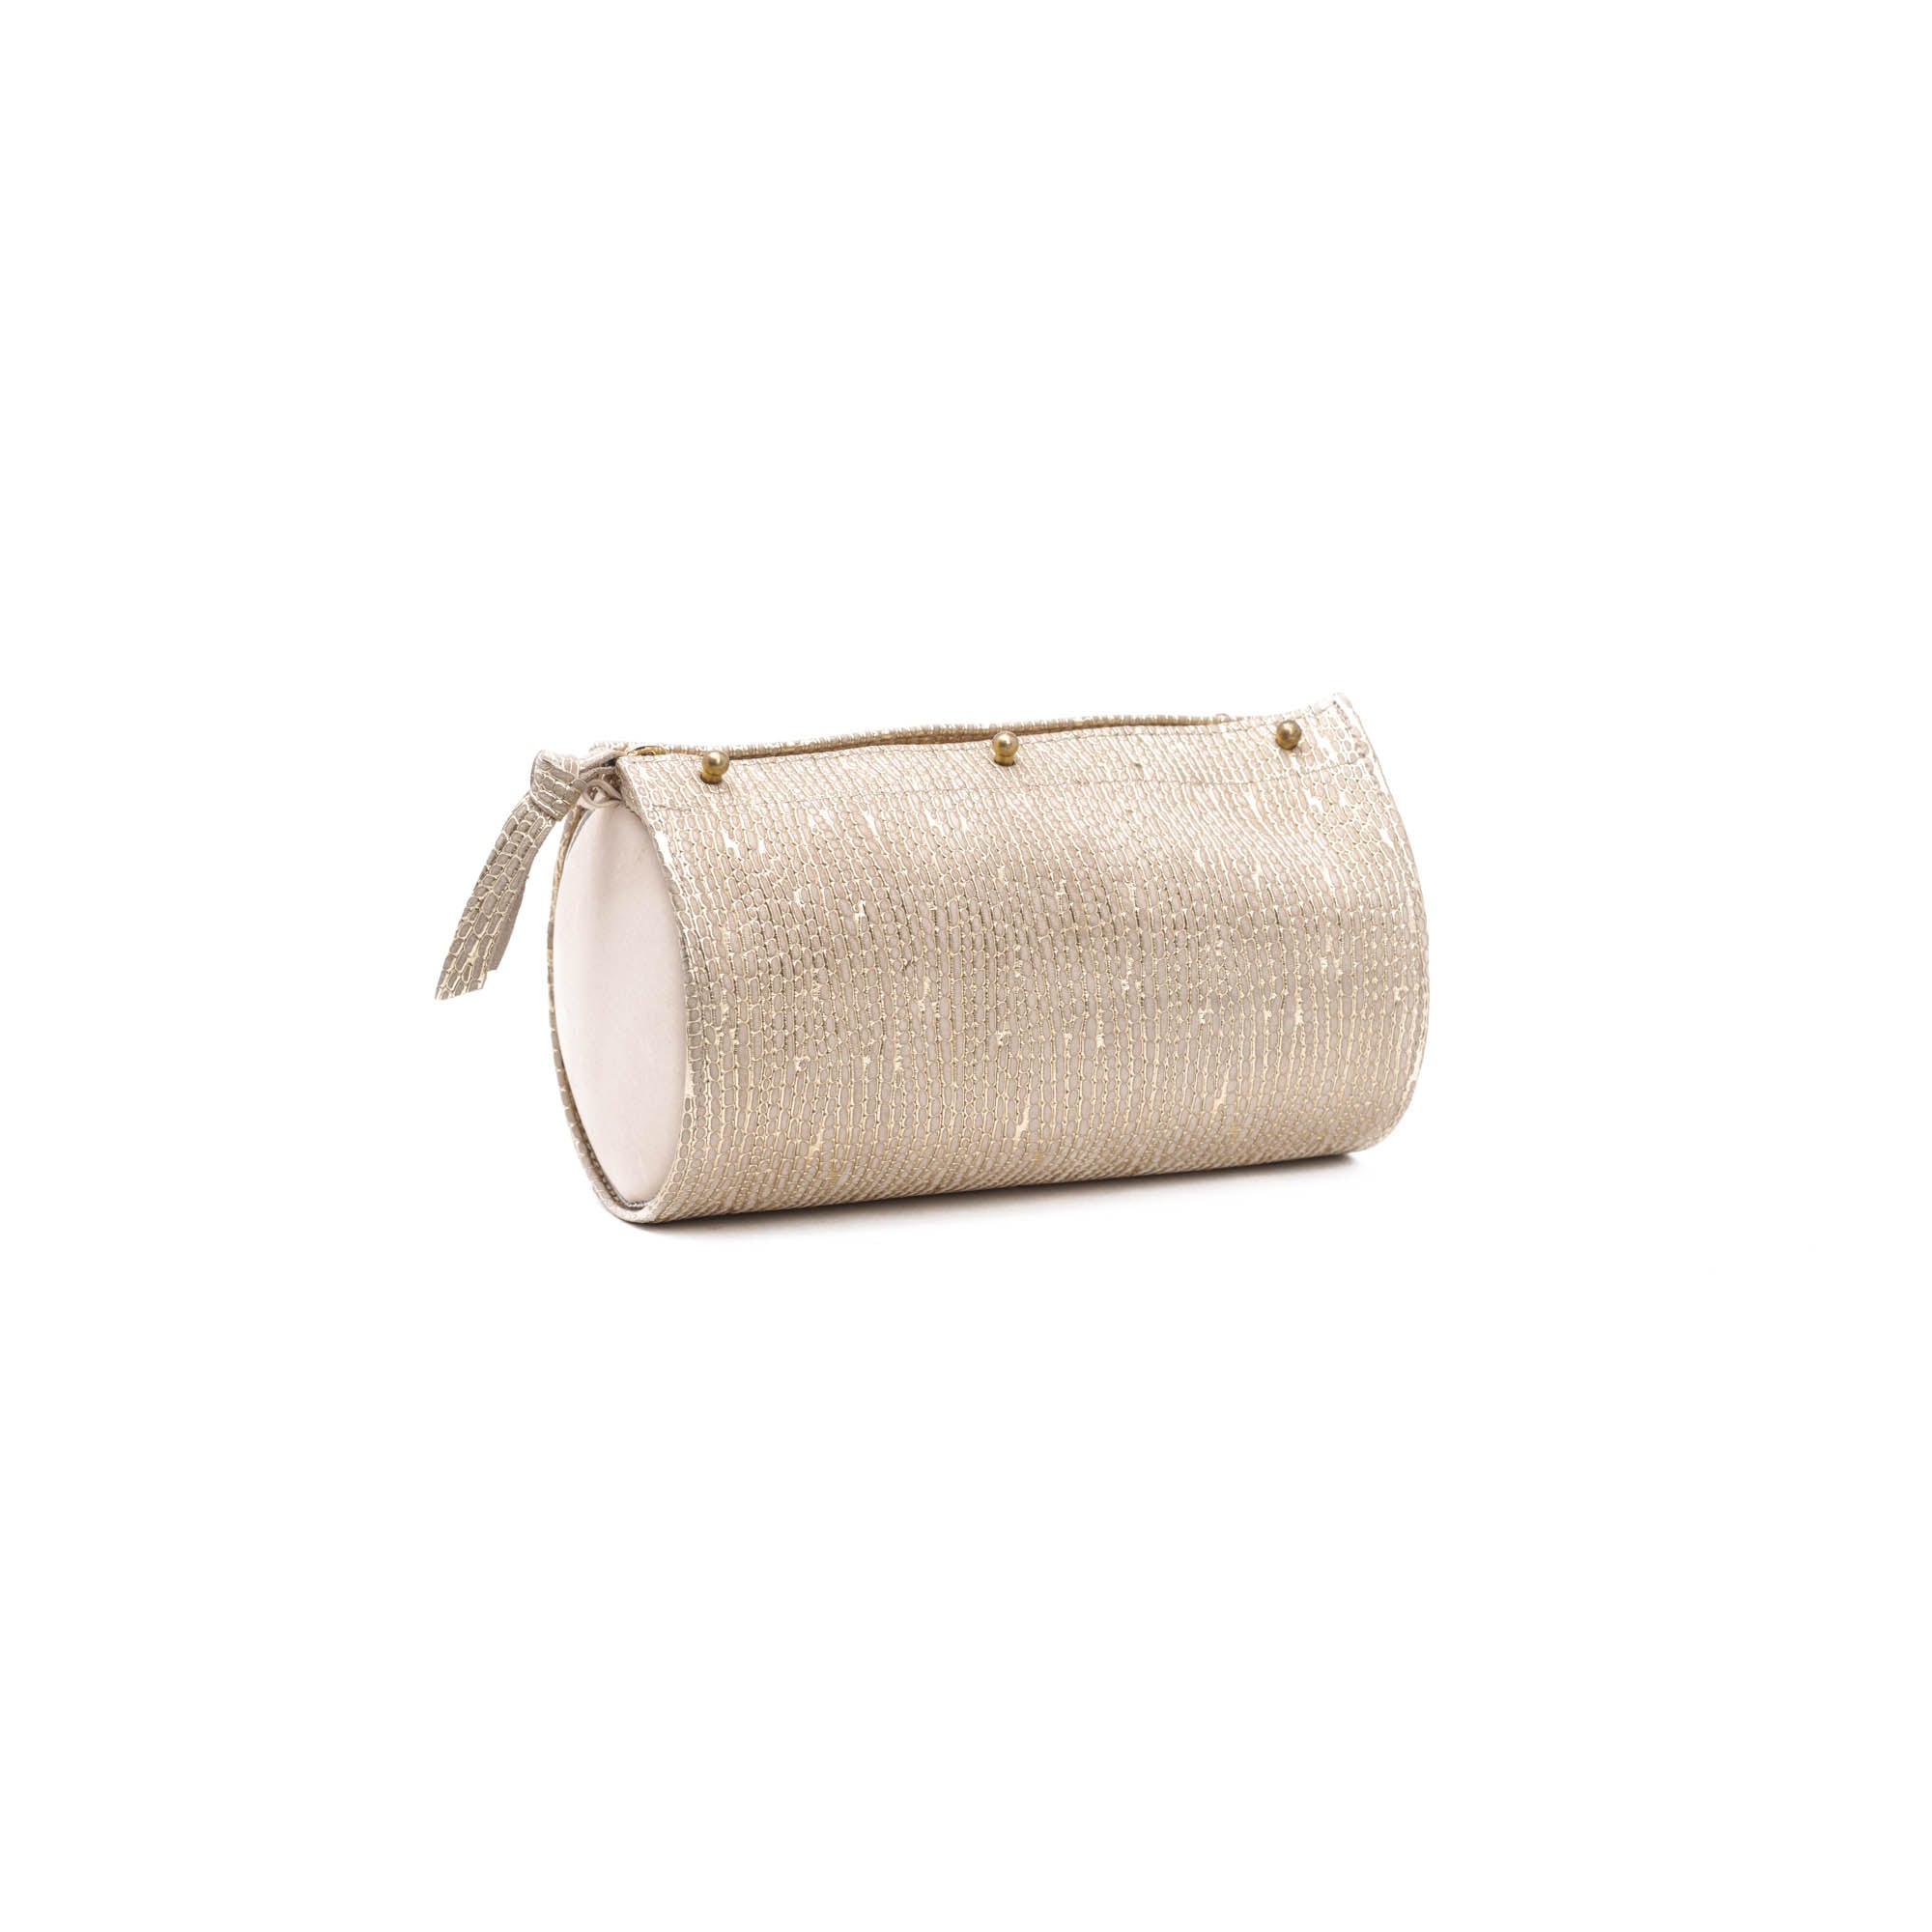 Robinson Barrel Natural and Gold 5-In-1 Convertible Handbag